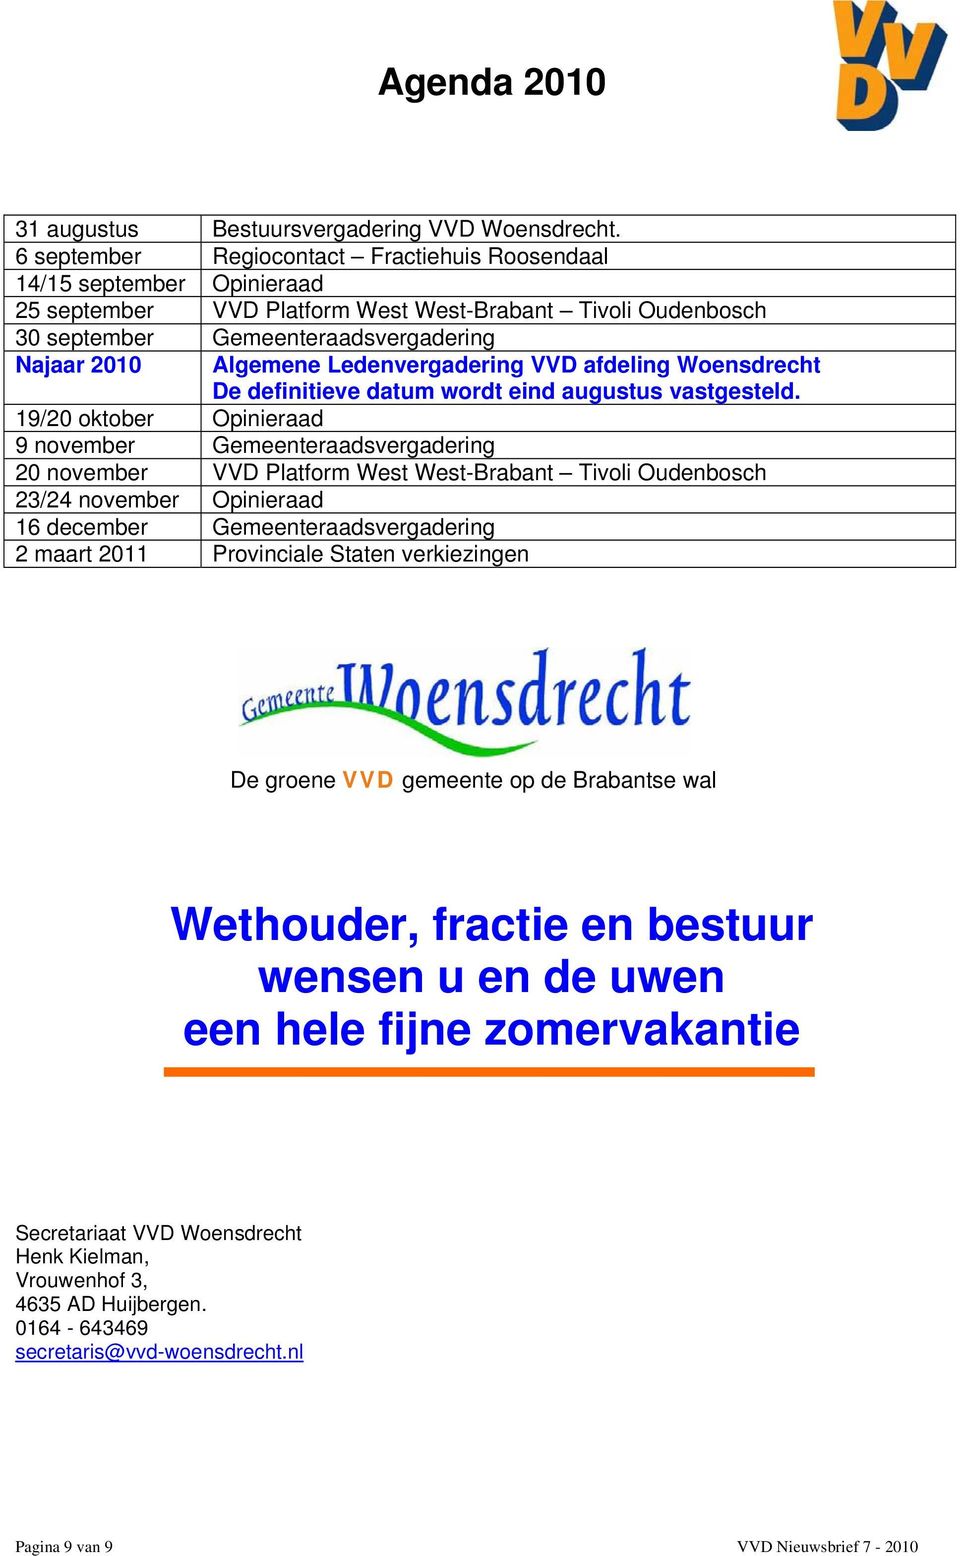 Ledenvergadering VVD afdeling Woensdrecht De definitieve datum wordt eind augustus vastgesteld.